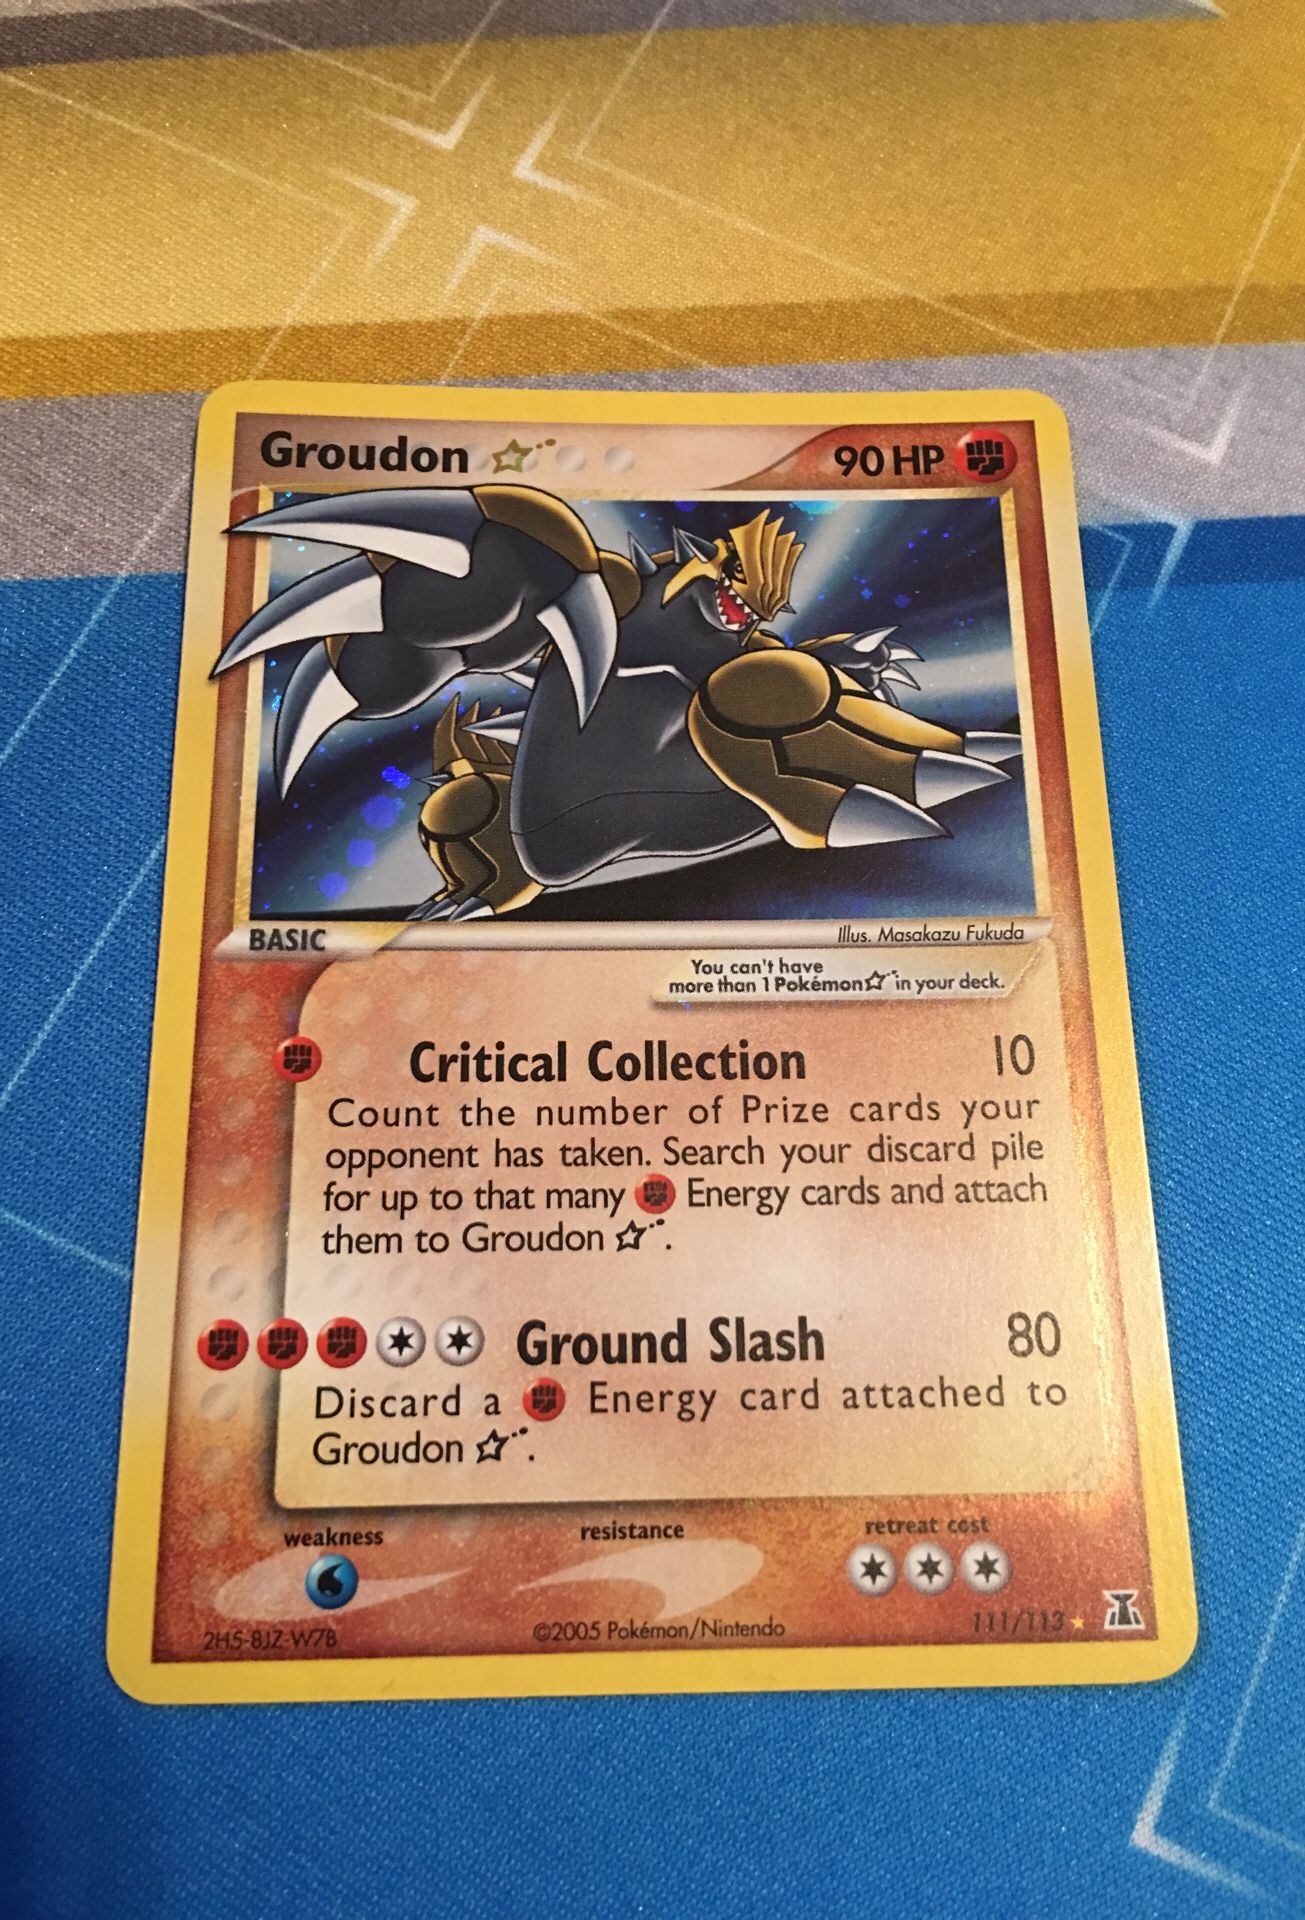 Kartana Gx Pokémon Card for Sale in Skokie, IL - OfferUp